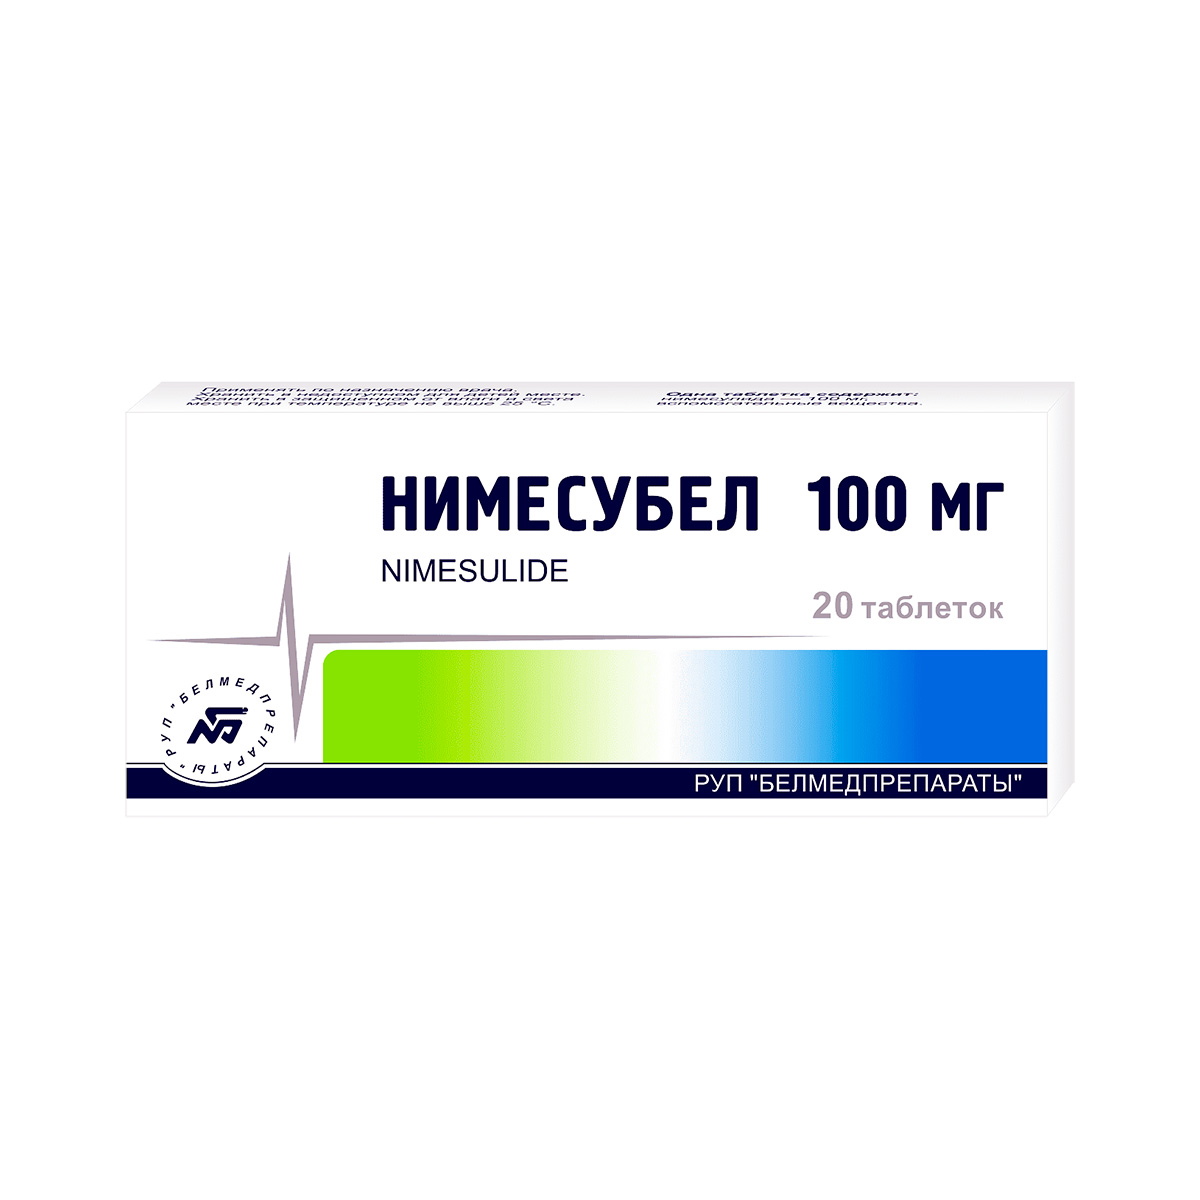 Нимесубел 100 мг таблетки 20 шт